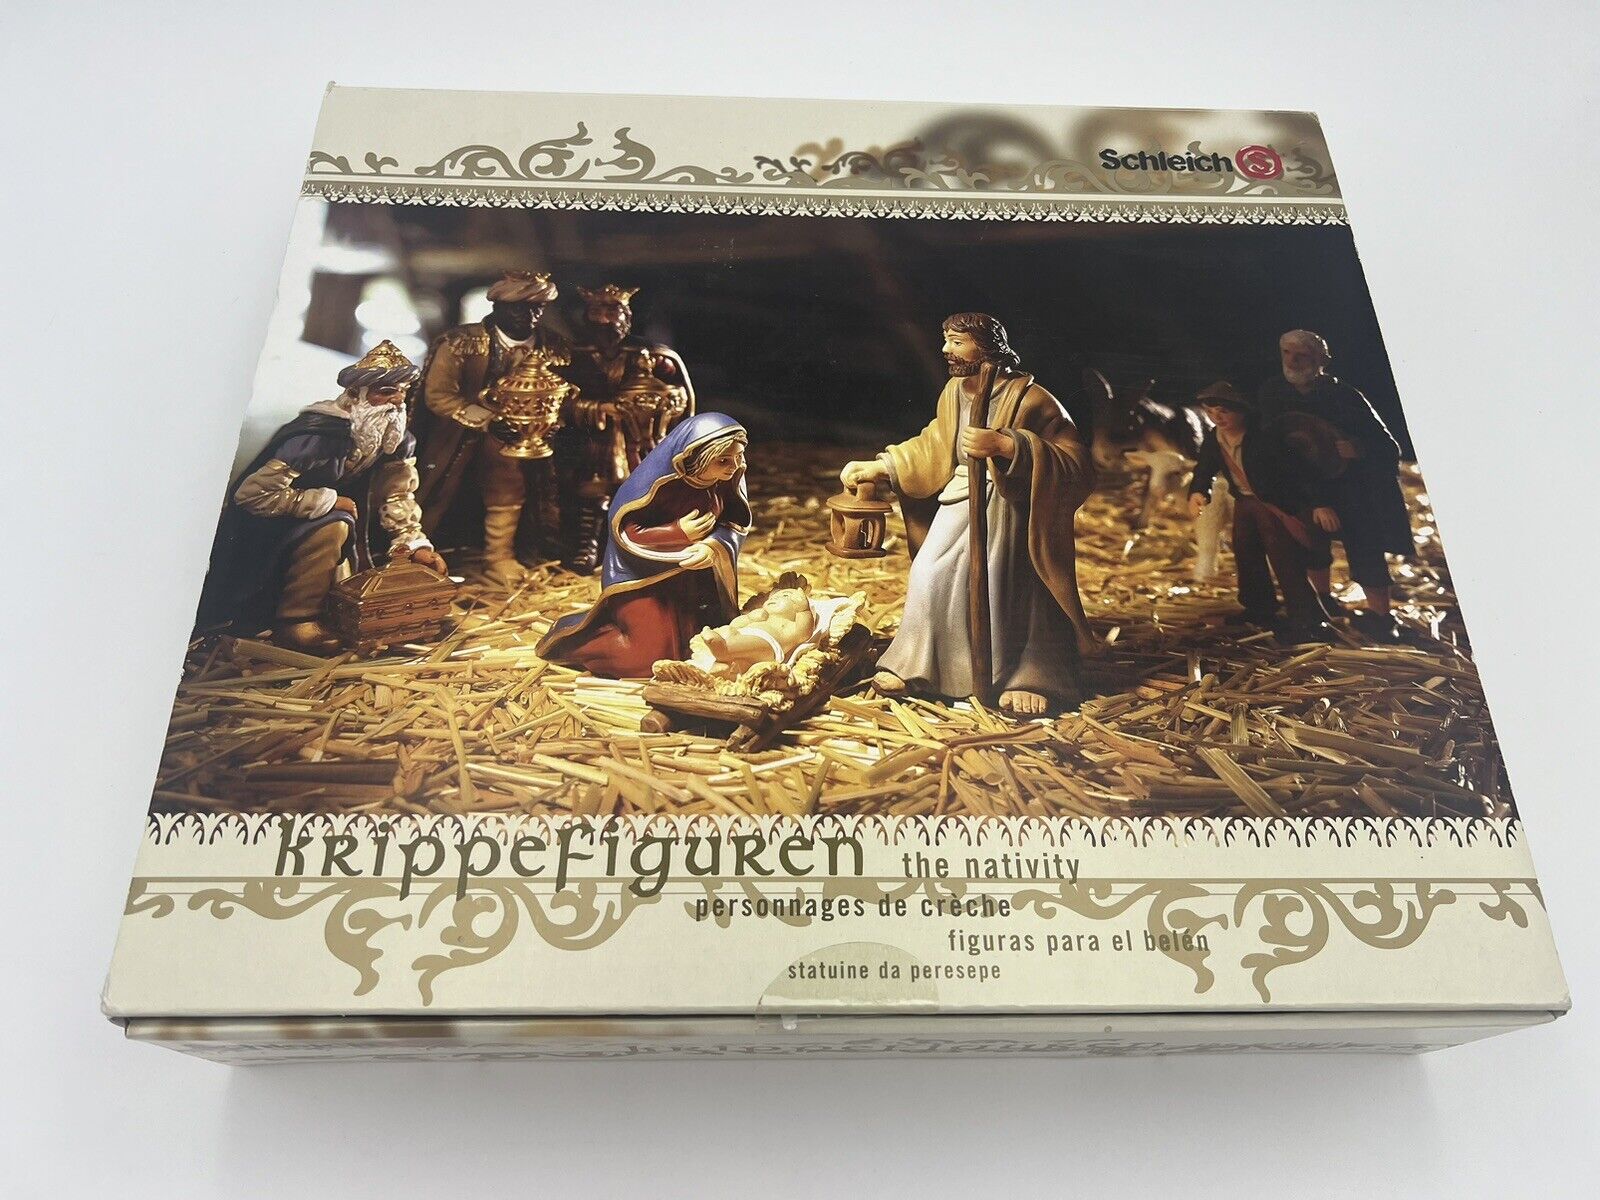 Schleich Krippefiguren 9 Piece Nativity Figurines/Figures Set In Box - Germany